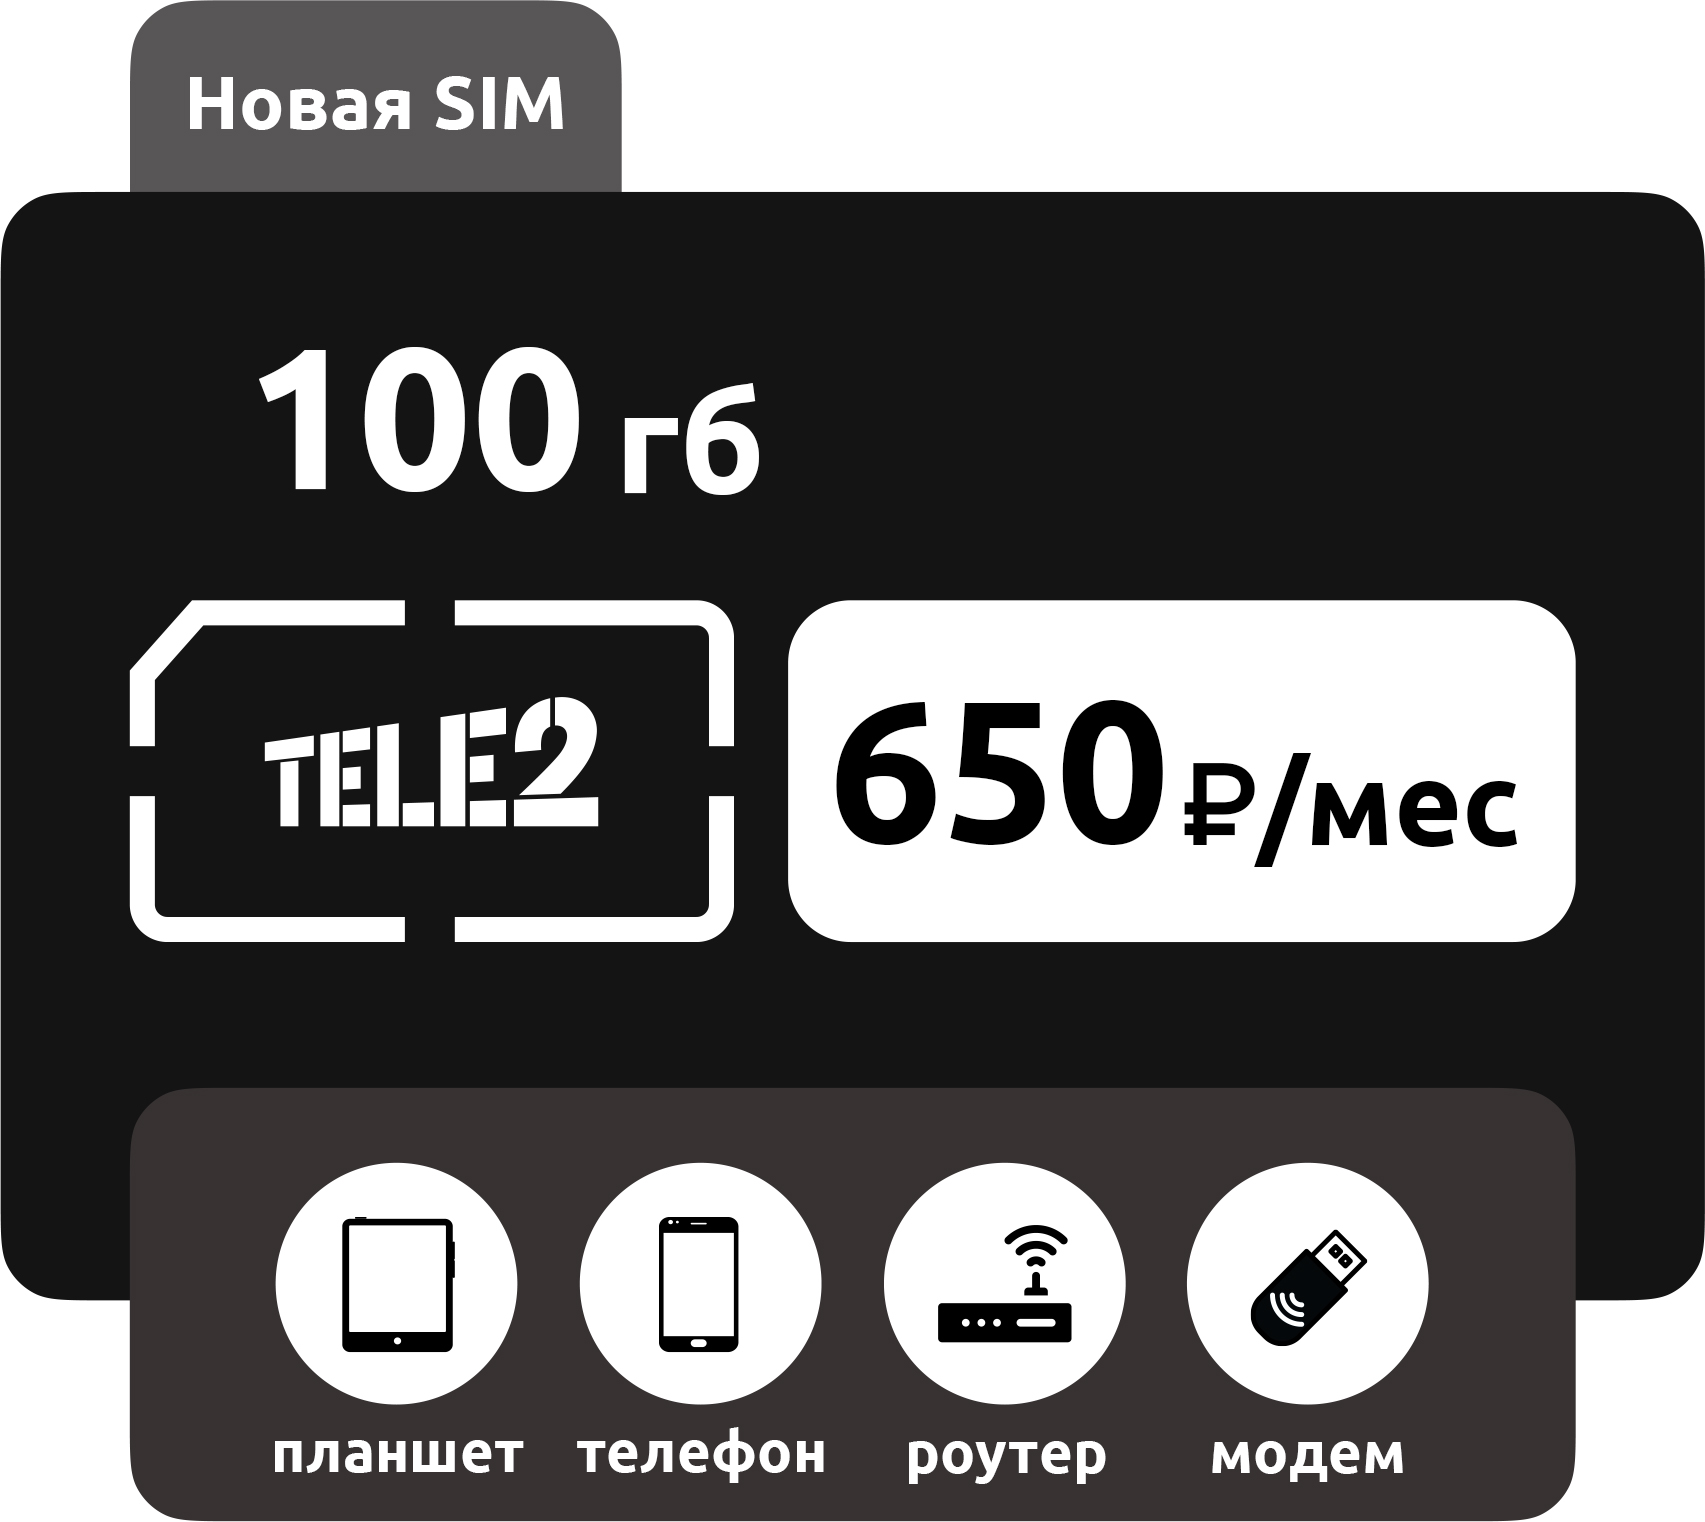 SIM-карта Теле2 100 ГБ фото